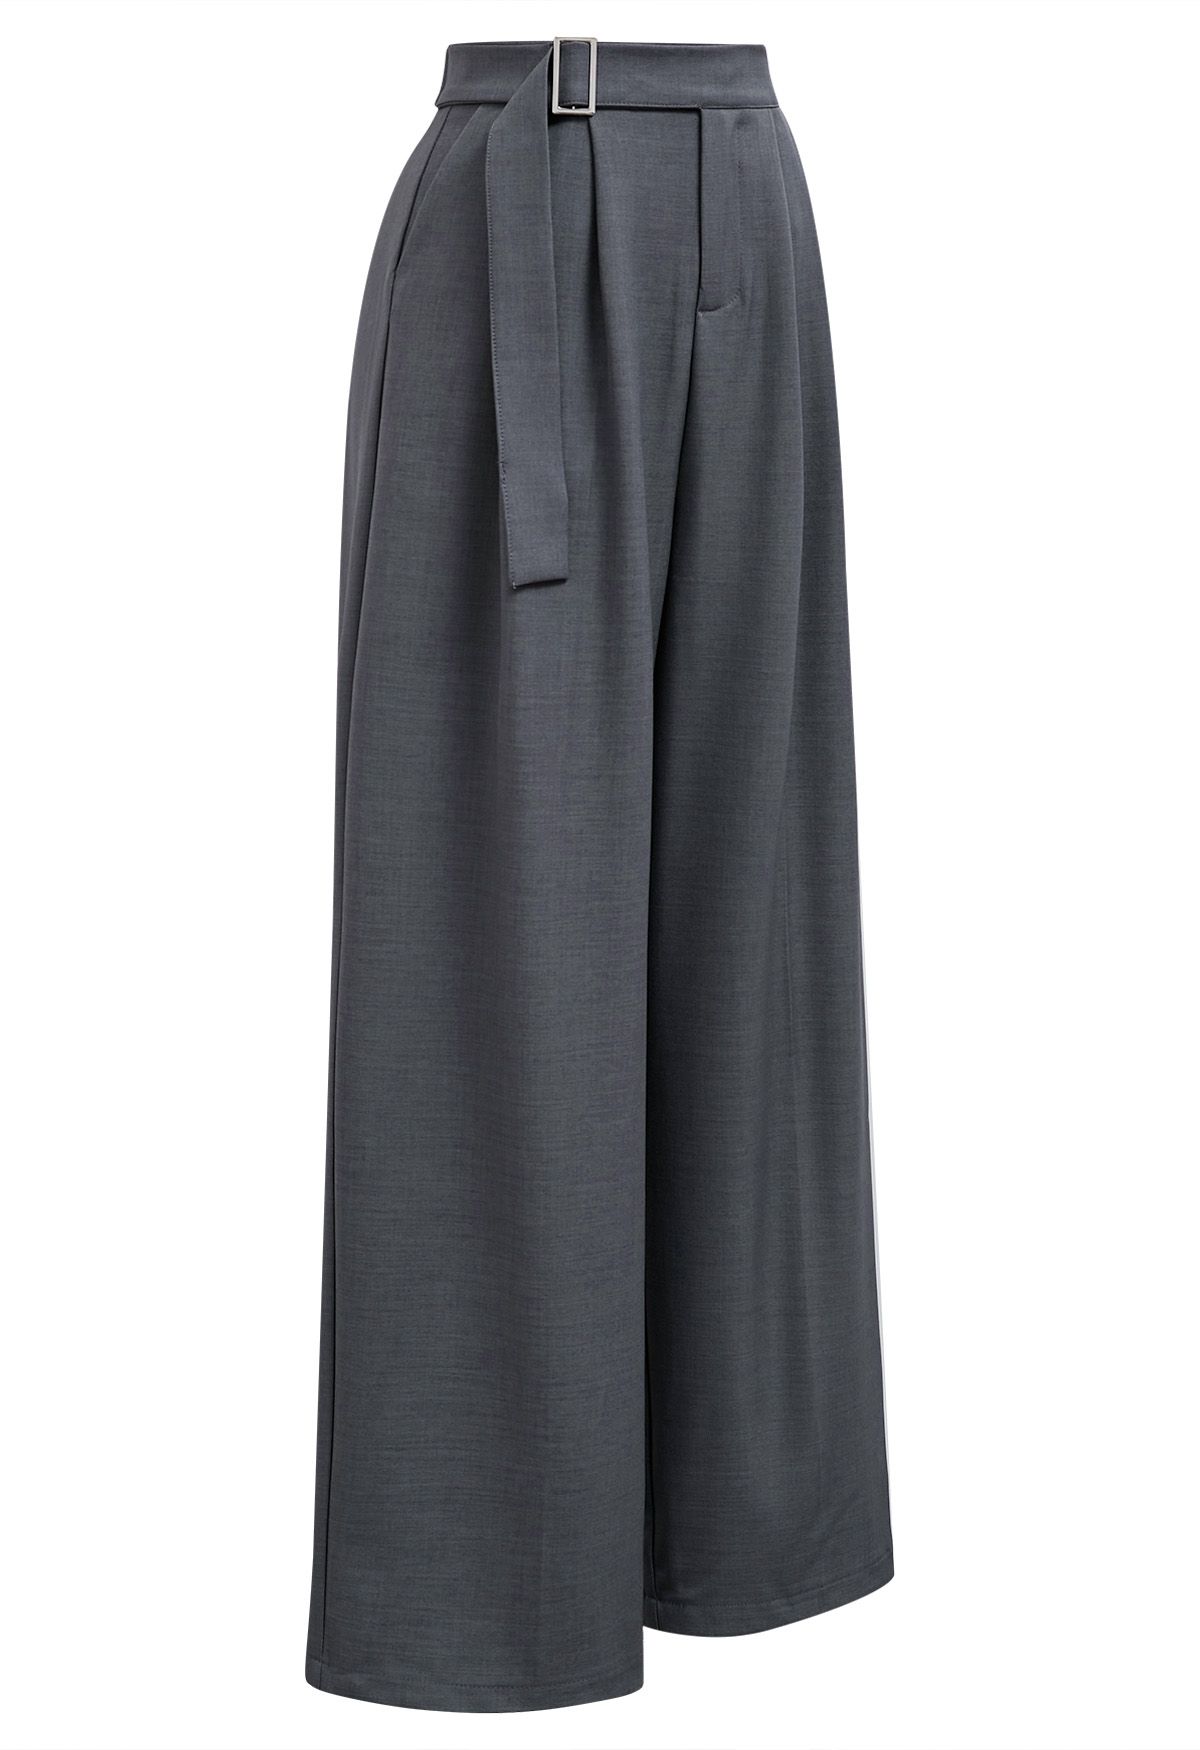 Pantalon large taille haute ceinturé uni en gris